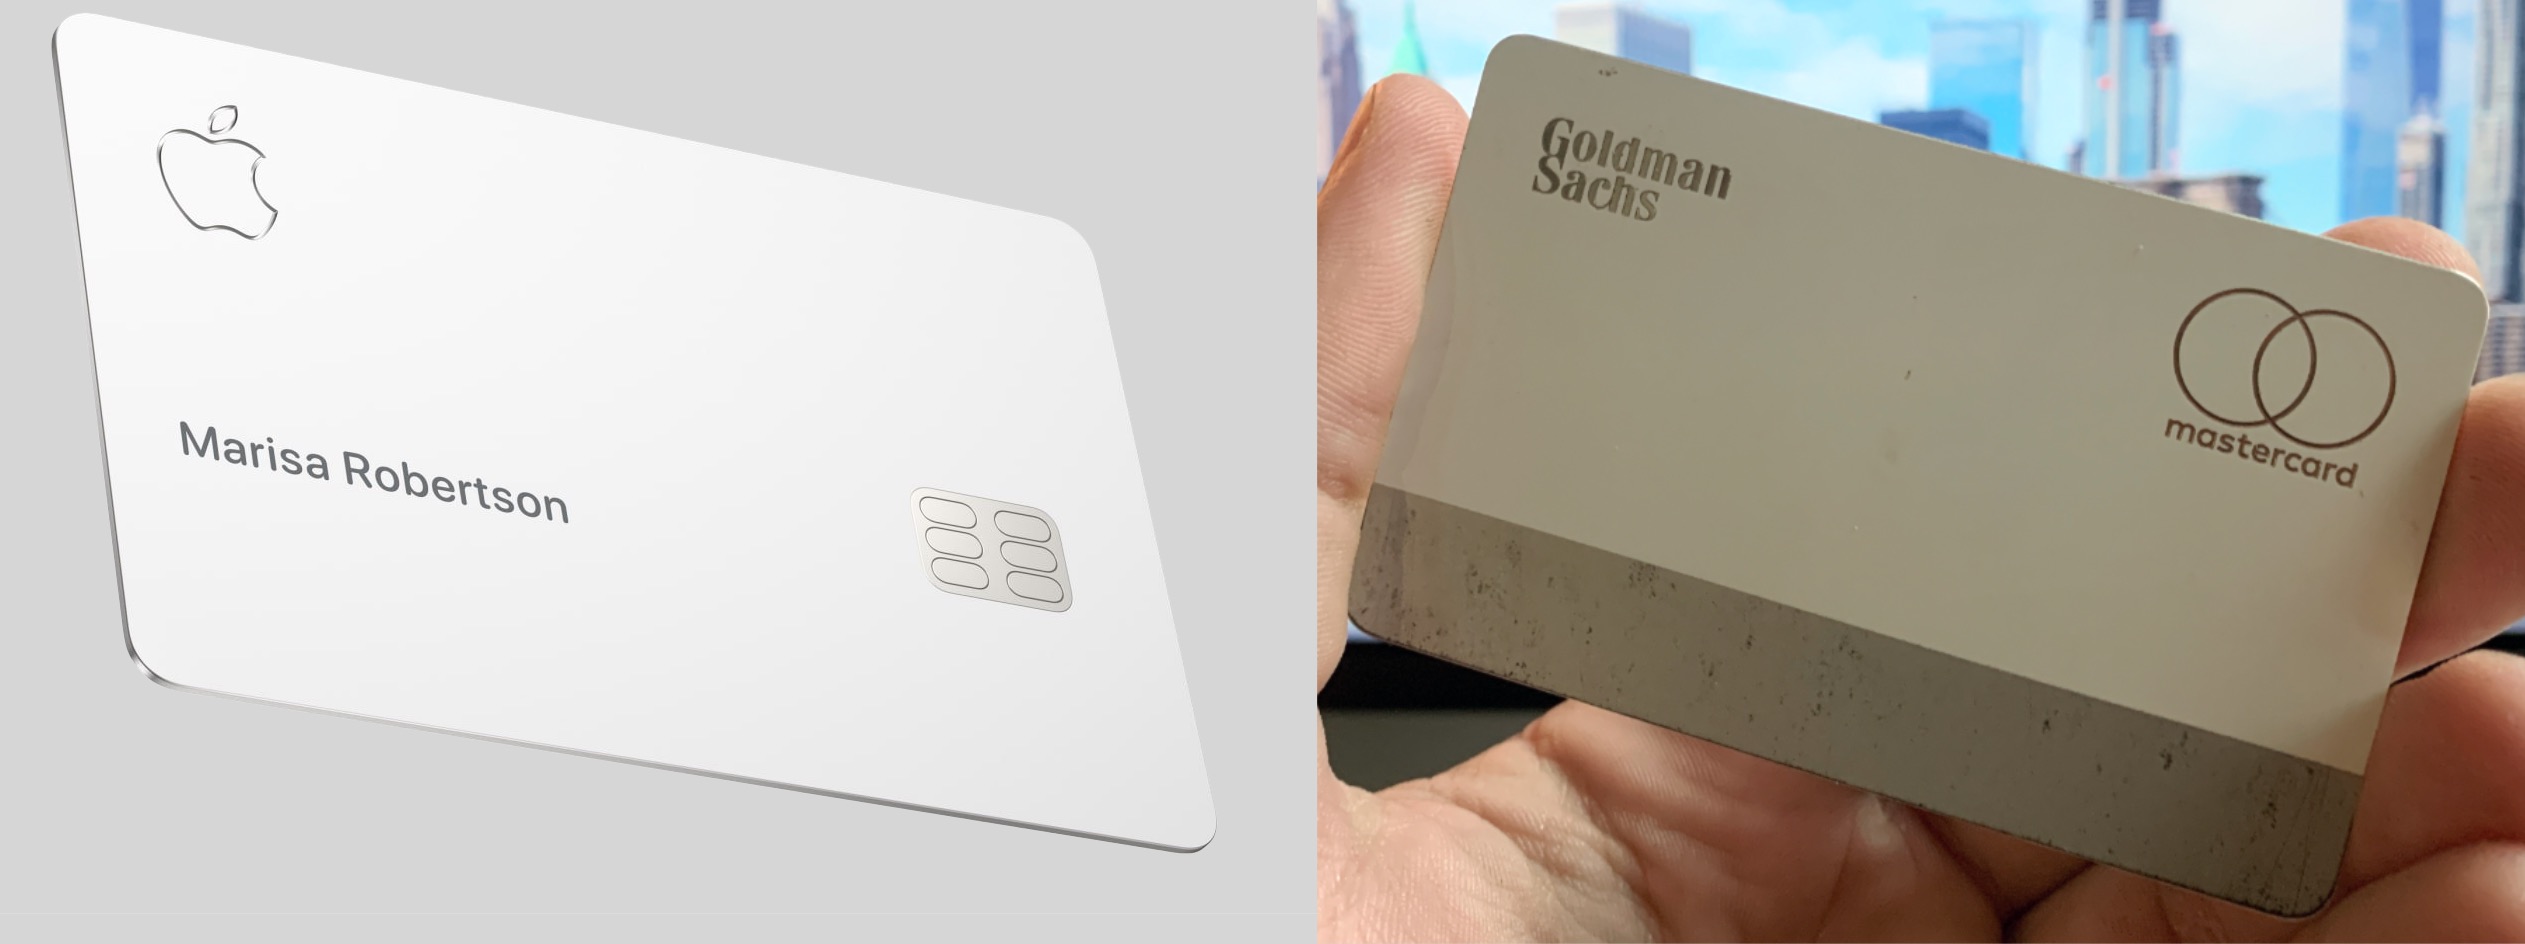 Титановая Apple Card царапается и облезает через 2 месяца использования